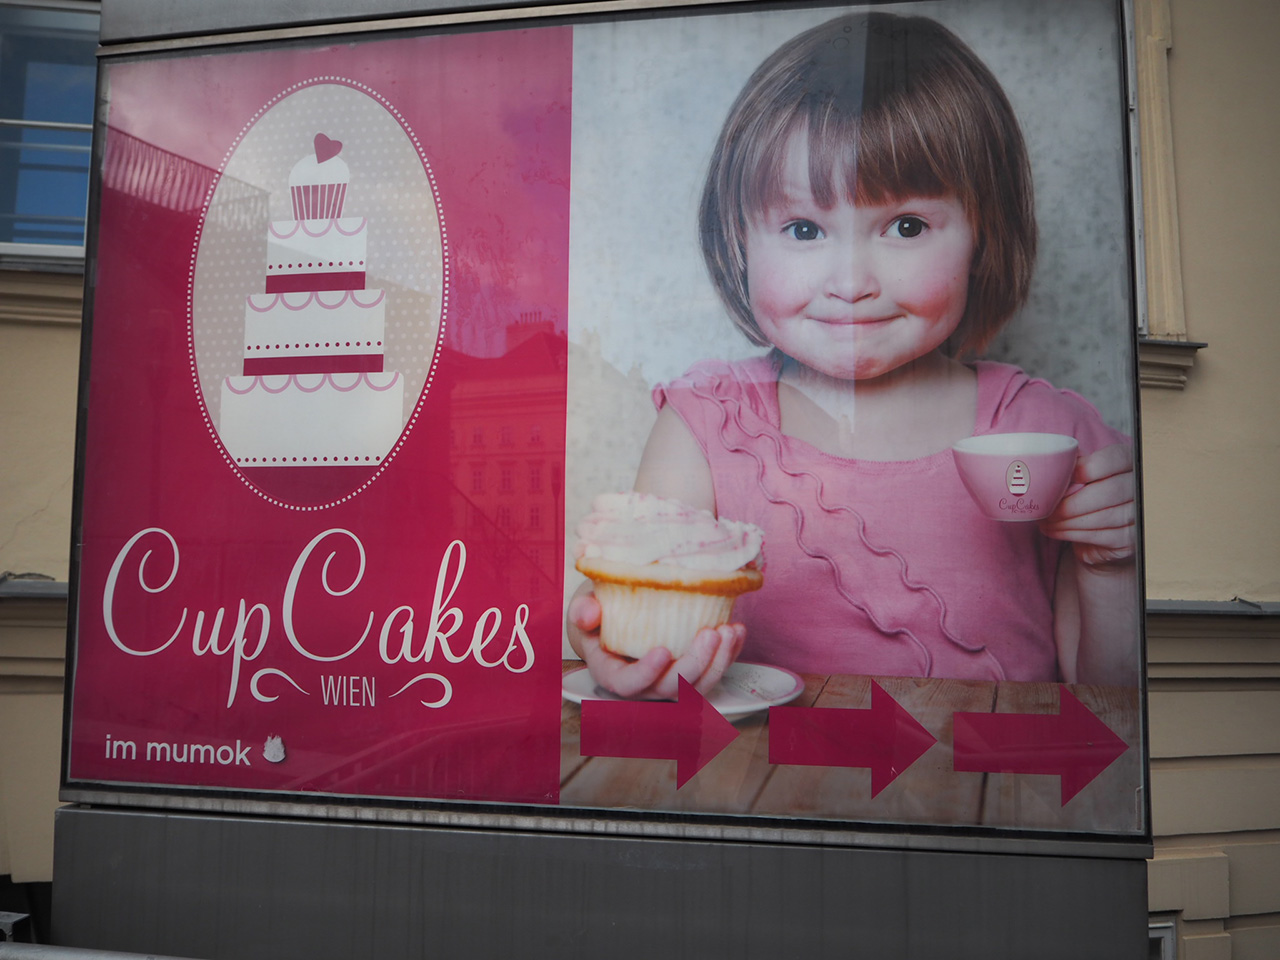 不気味な笑みを浮かべるカップケーキ屋の愛くるしい看板 - オーストリアSV2014